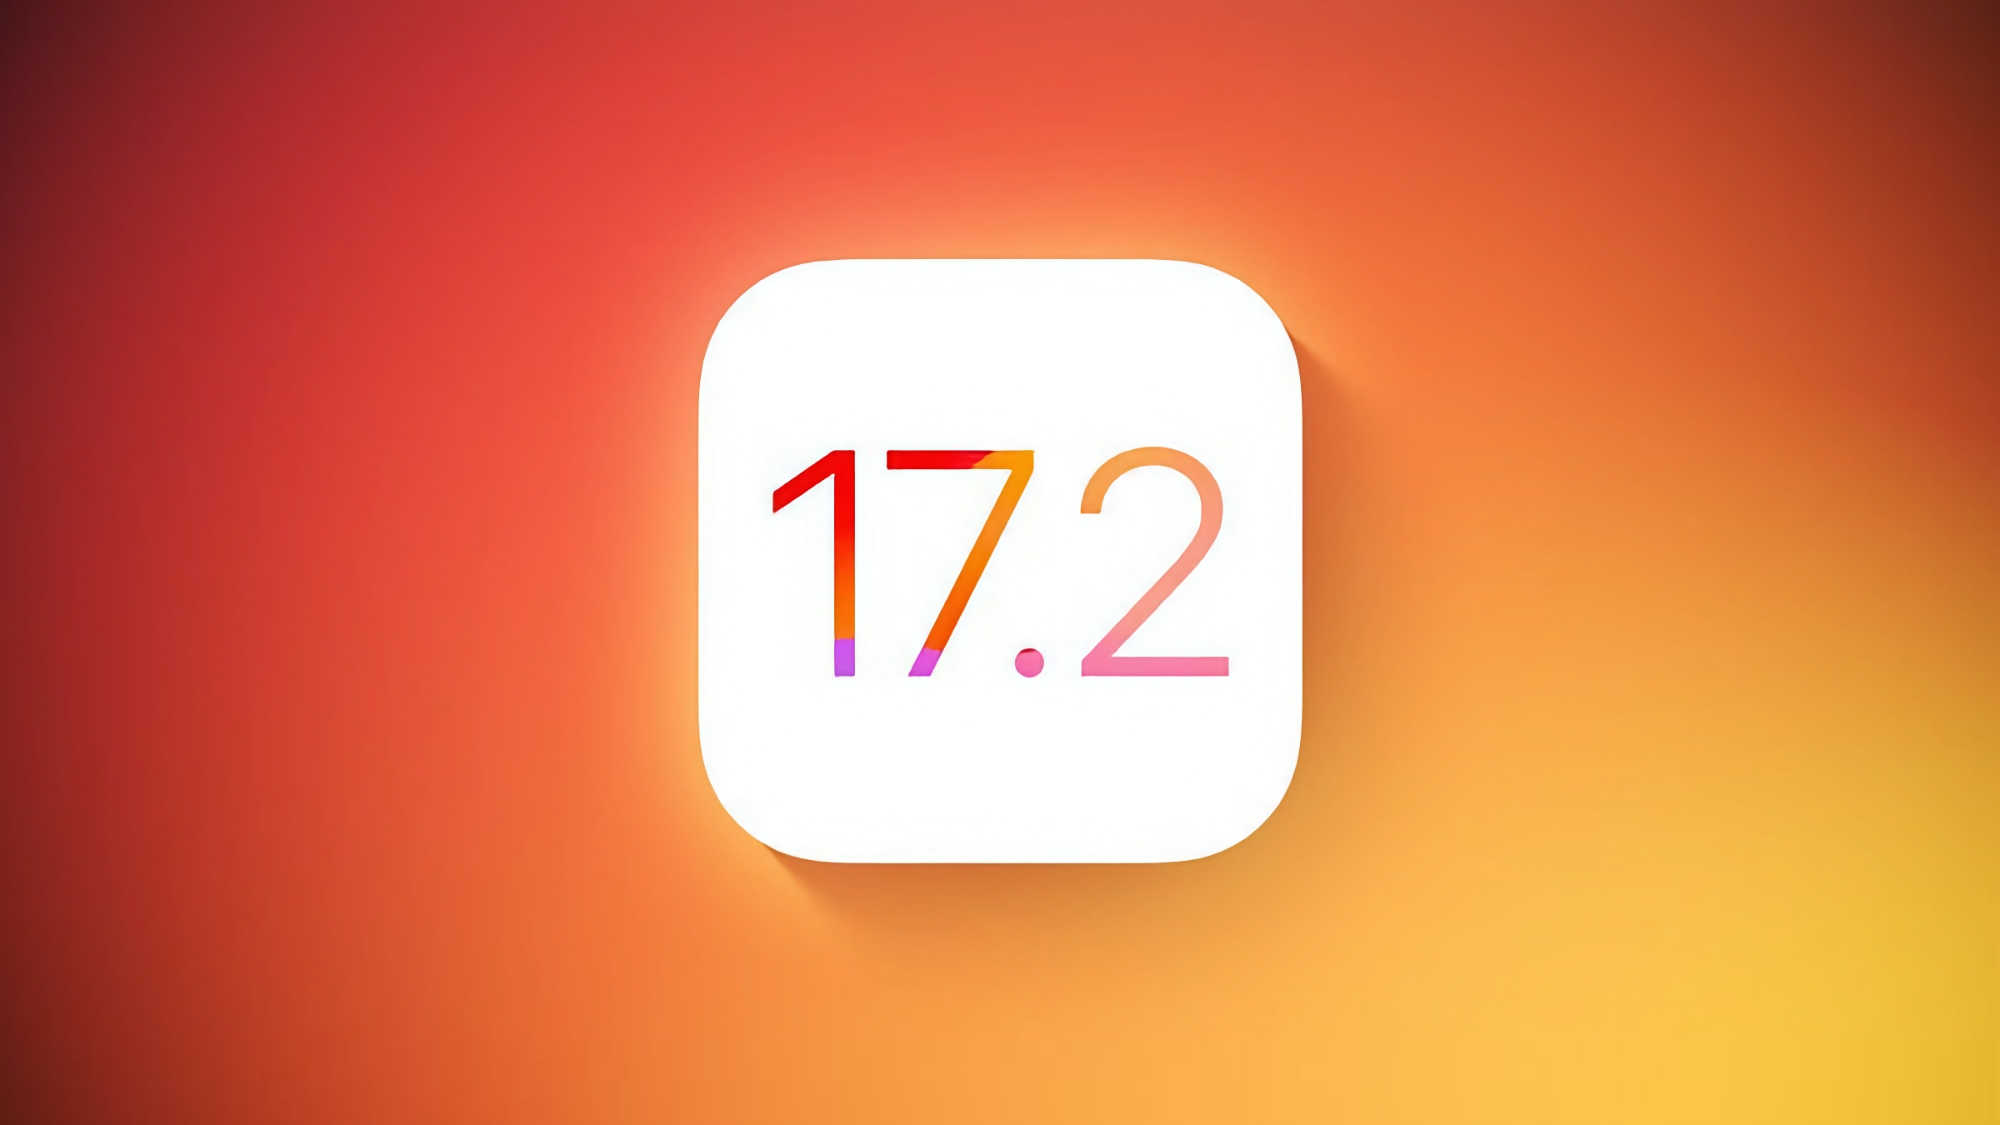 Apple wydało iOS 17.2 Beta 1 z aplikacją Journal i nowymi funkcjami